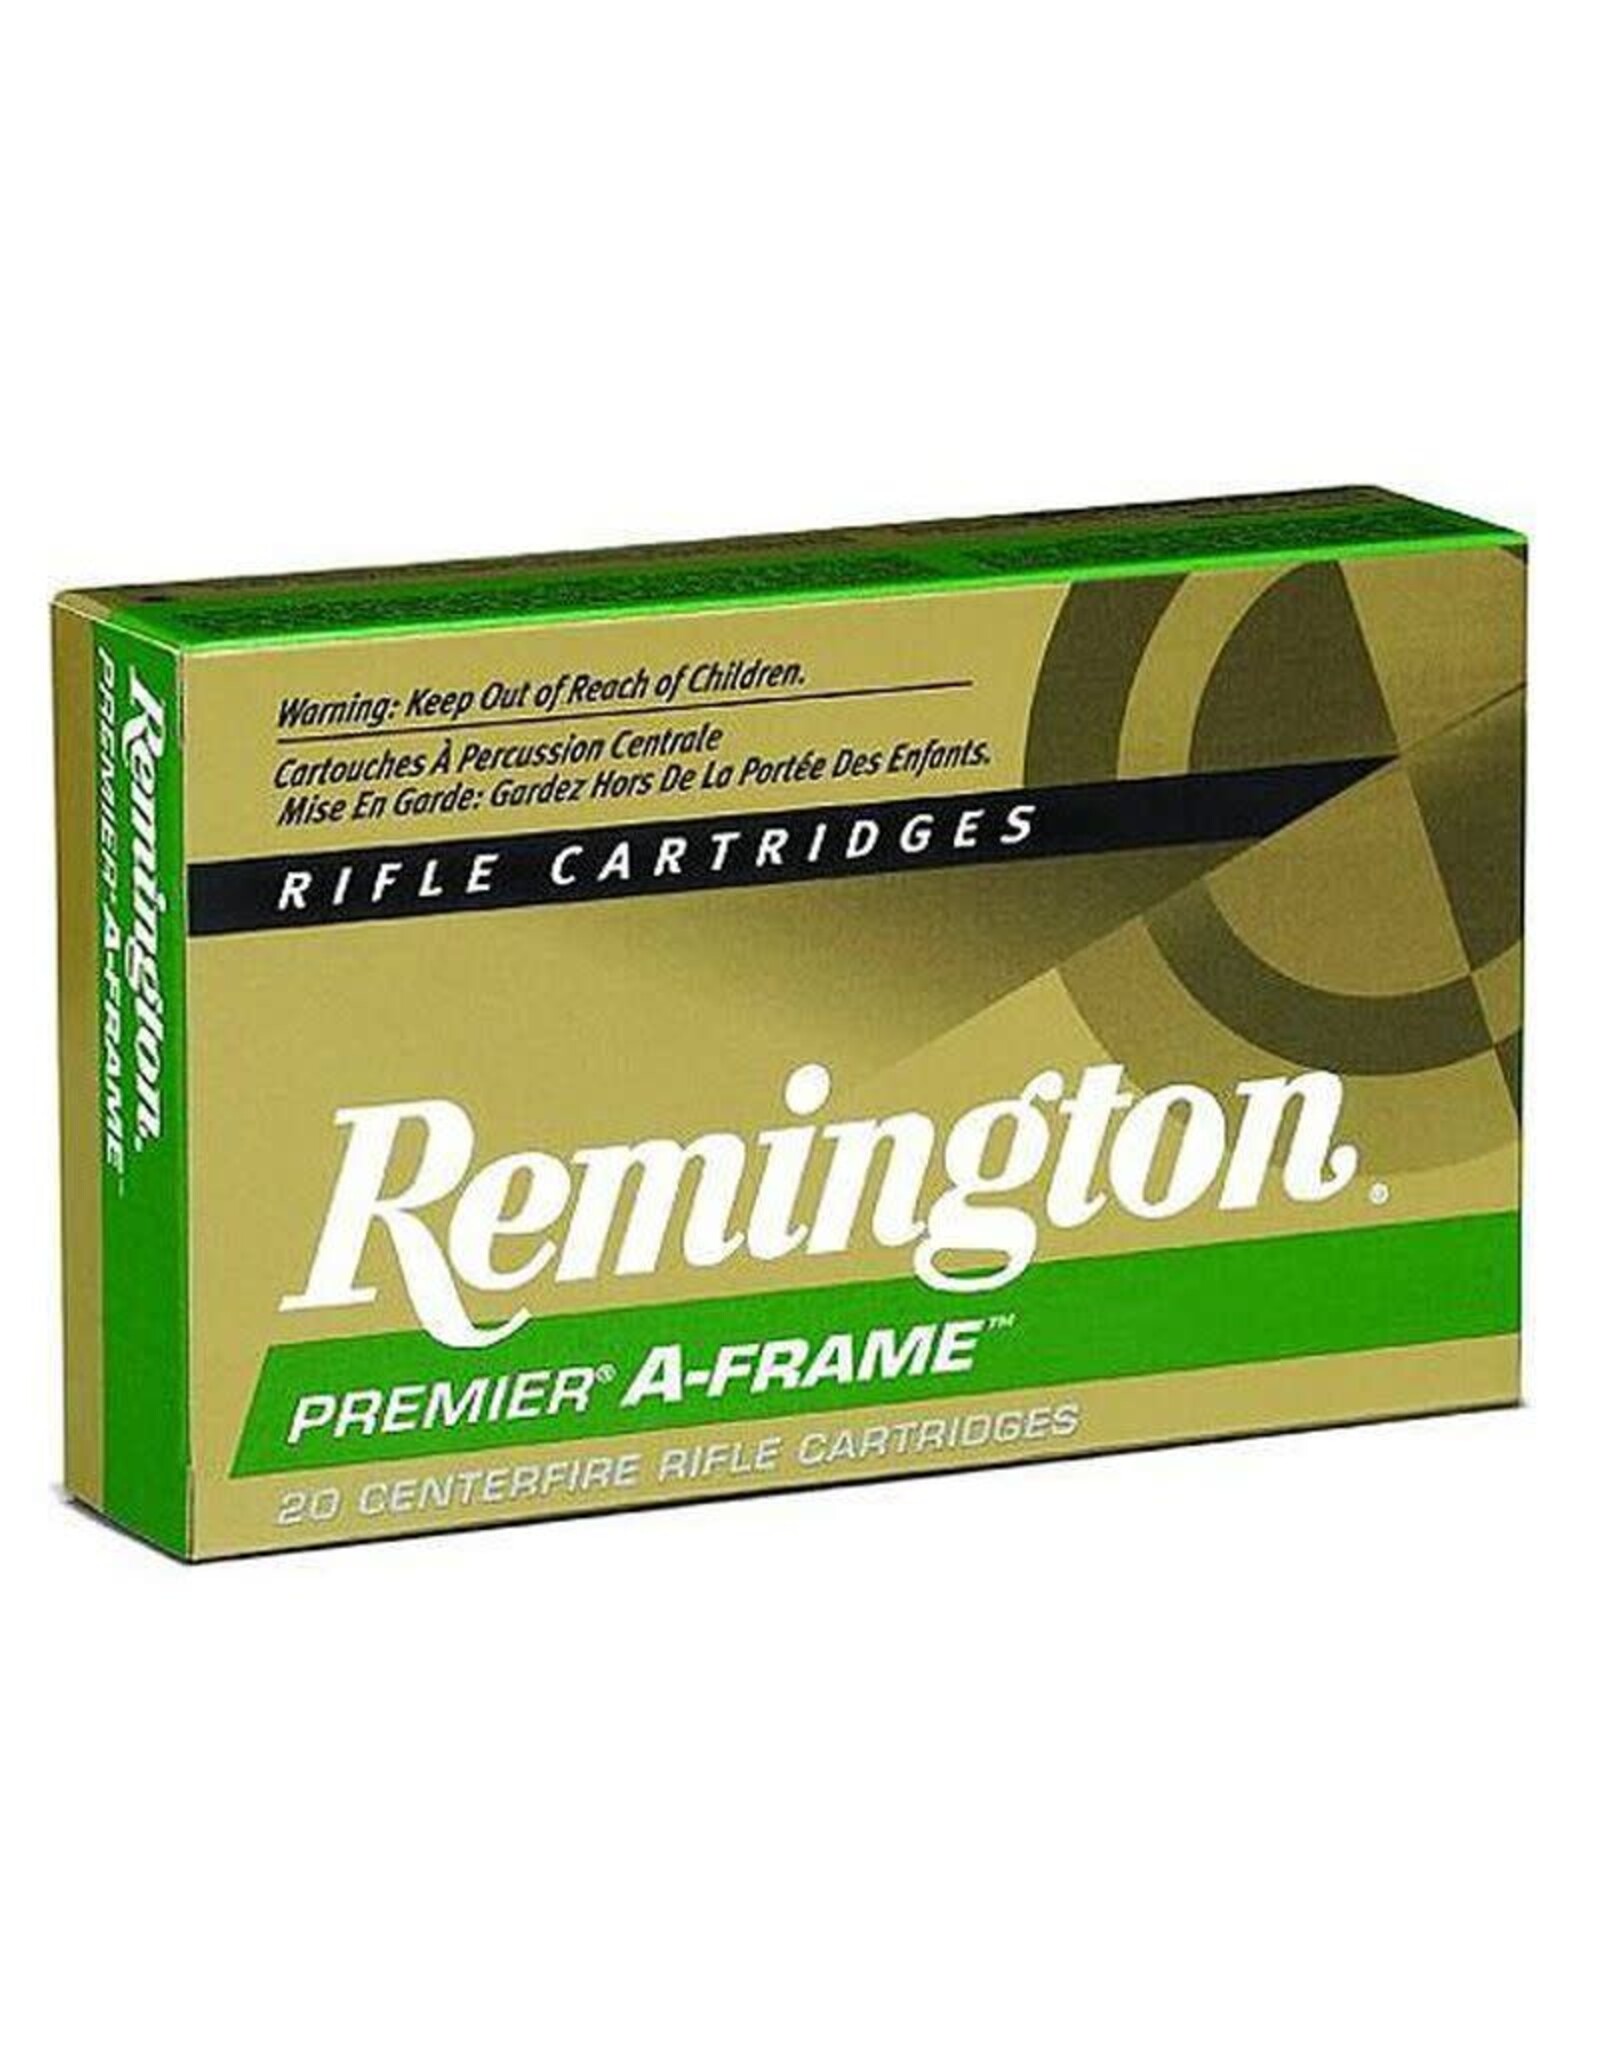 REMINGTON REM PREMIER A-FRAME